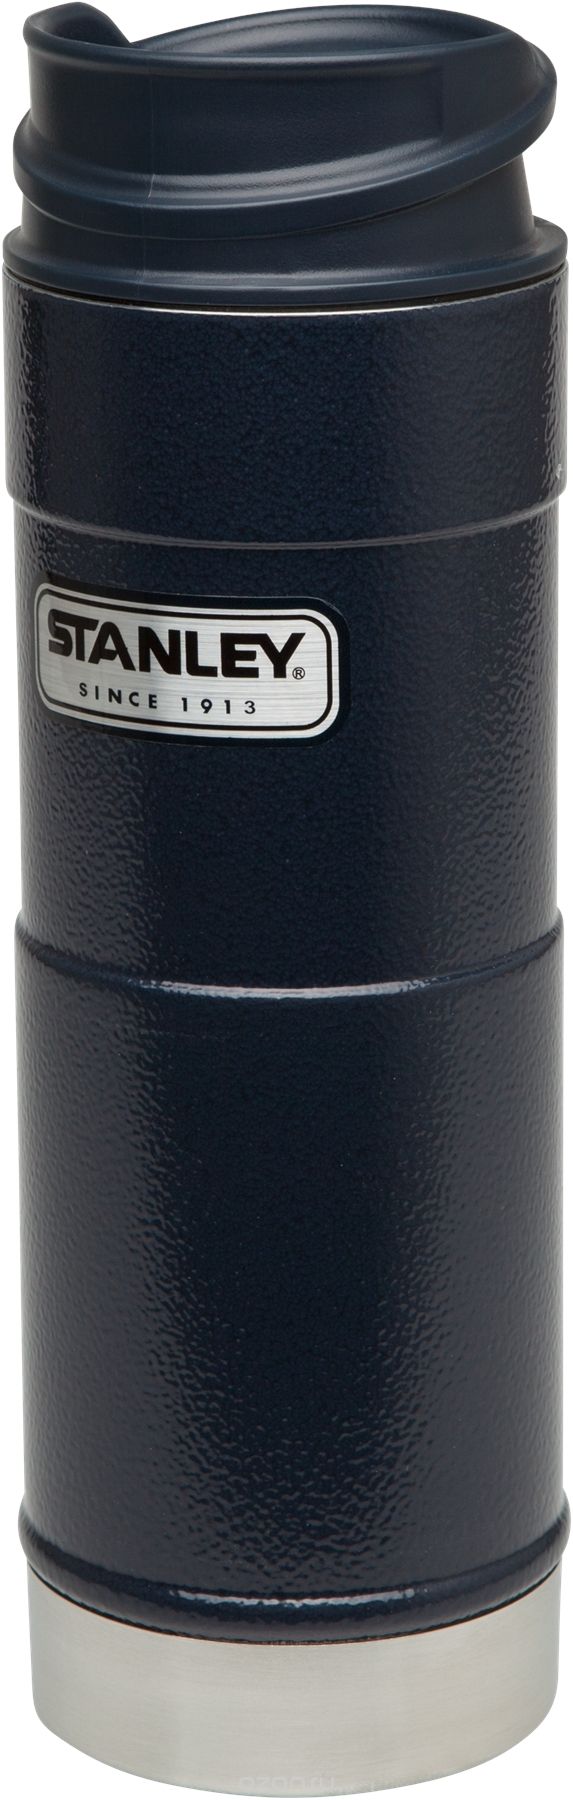  Stanley 